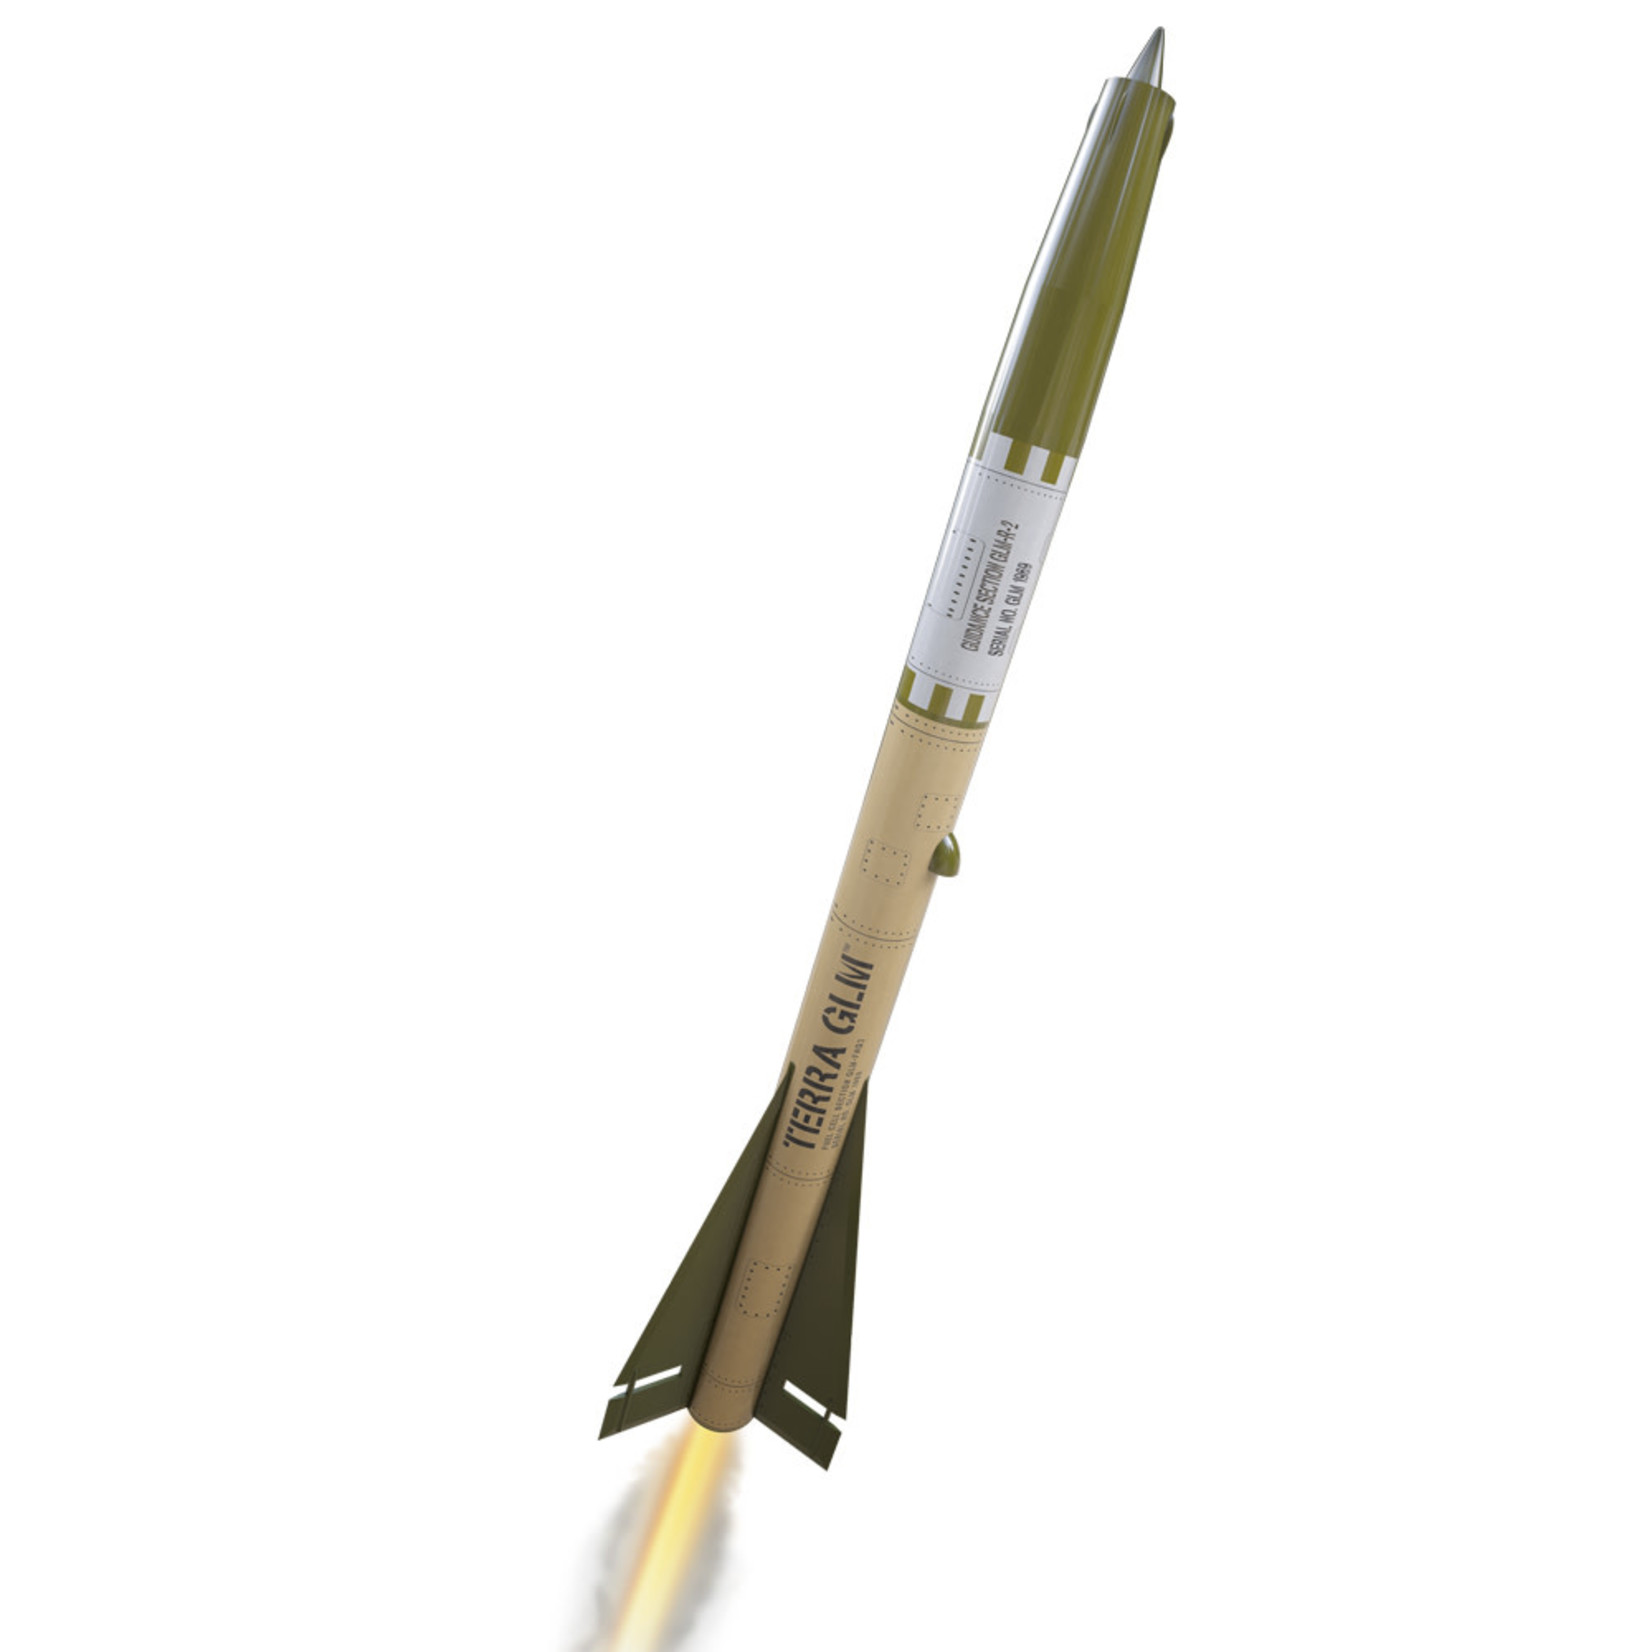 Estes EST7292 Terra GLM Rocket